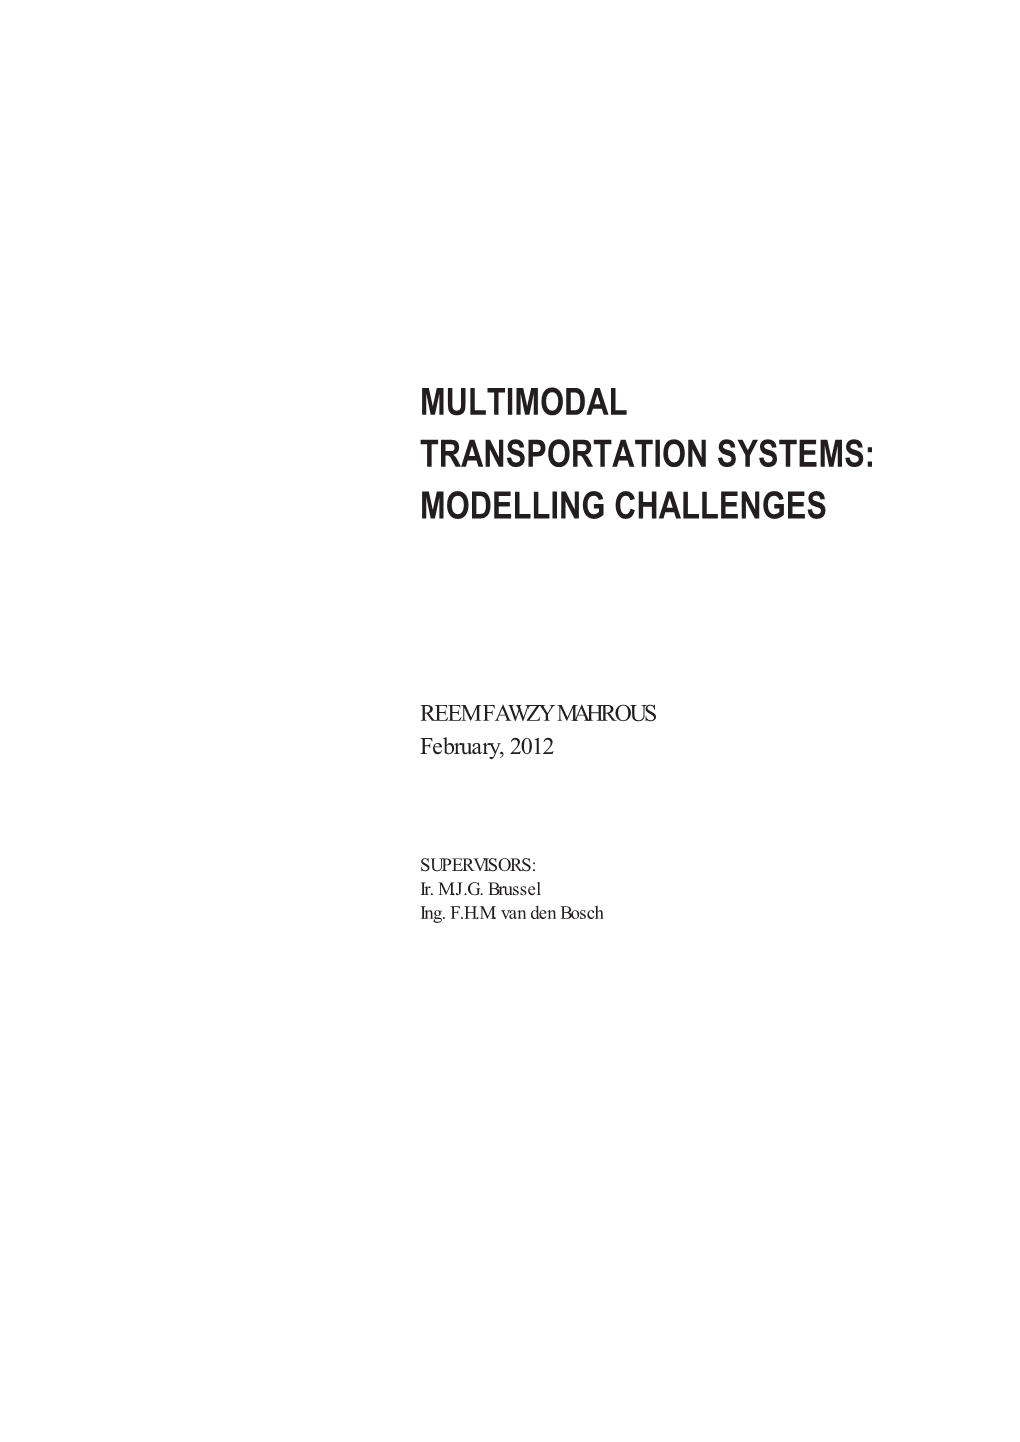 Multimodal Transportation Systems